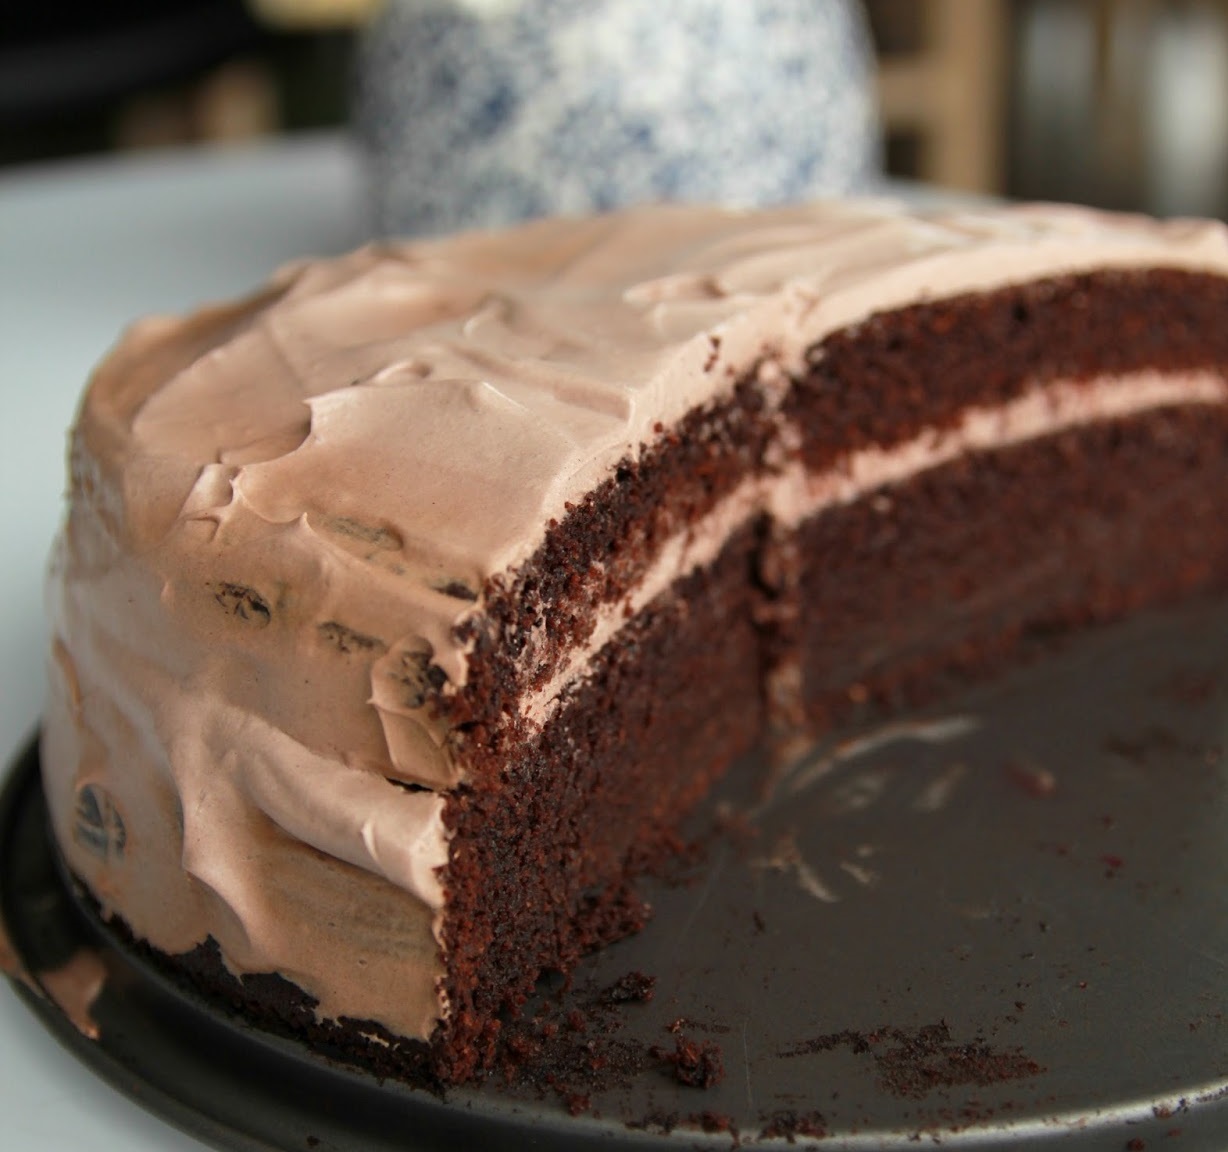 Veganiškas šokoladinis tortas su lengvai šokoladiniu kremu